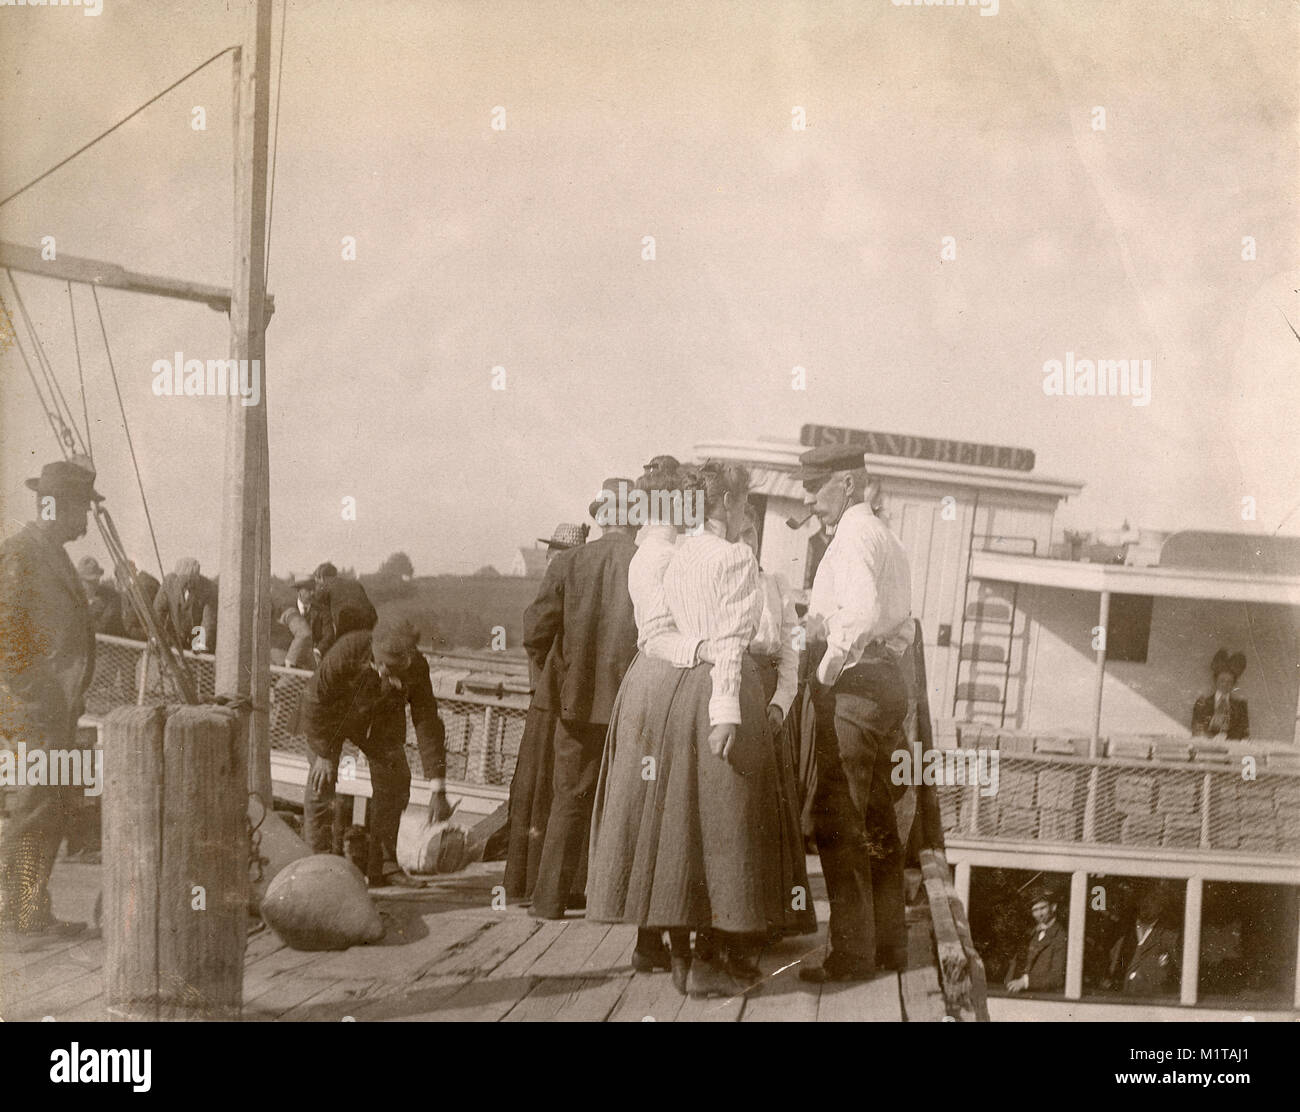 Antique circa 1905 fotografia, l'isola Belle steamship presso il molo. La posizione è in o vicino a Riggsville (ora Robinhood), Maine in Sagadahoc County, Stati Uniti d'America. Foto Stock